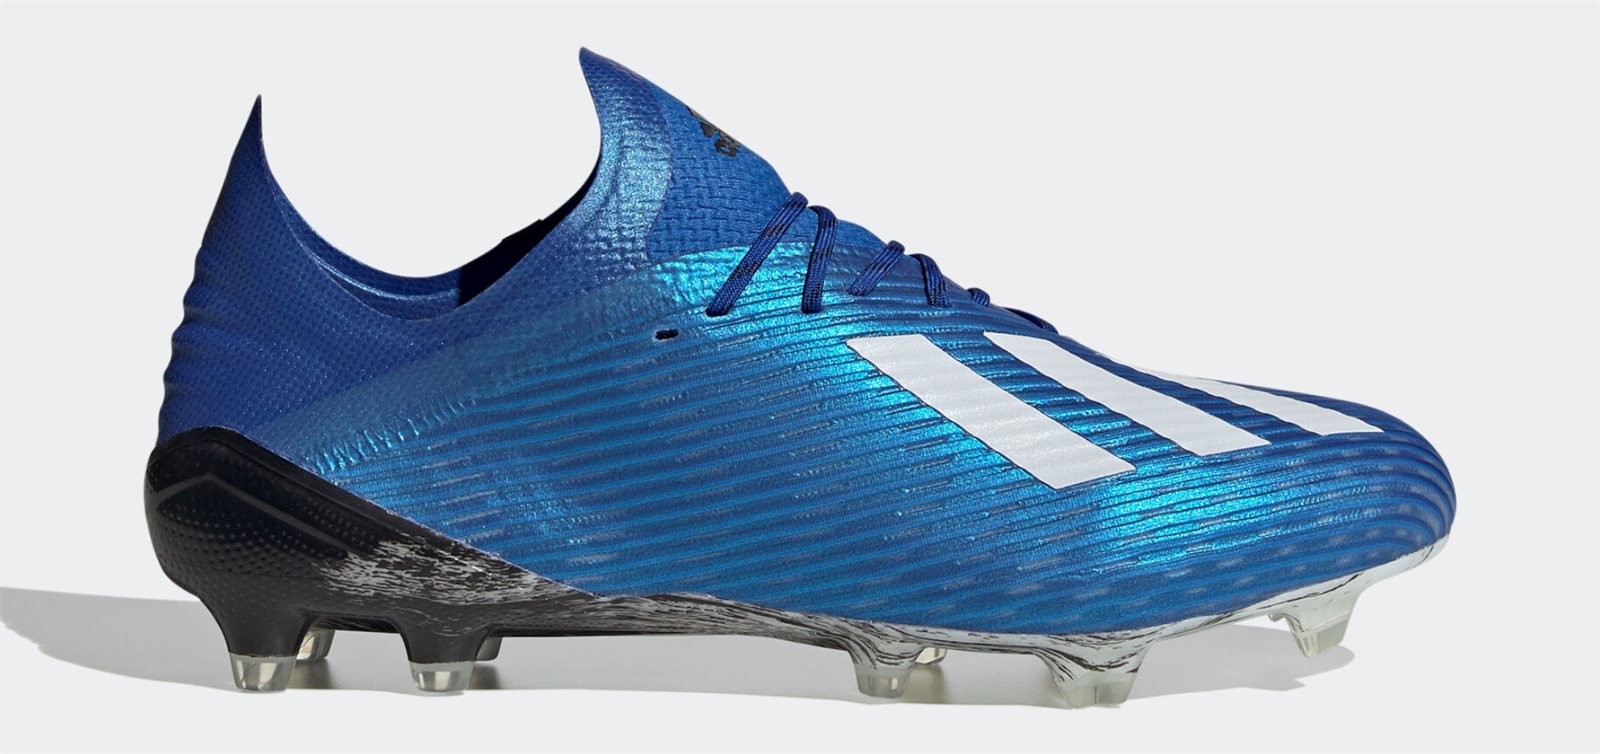 Karim Benzema, Marcelo sử dụng dòng giày trợ tốc của Adidas là X19.1